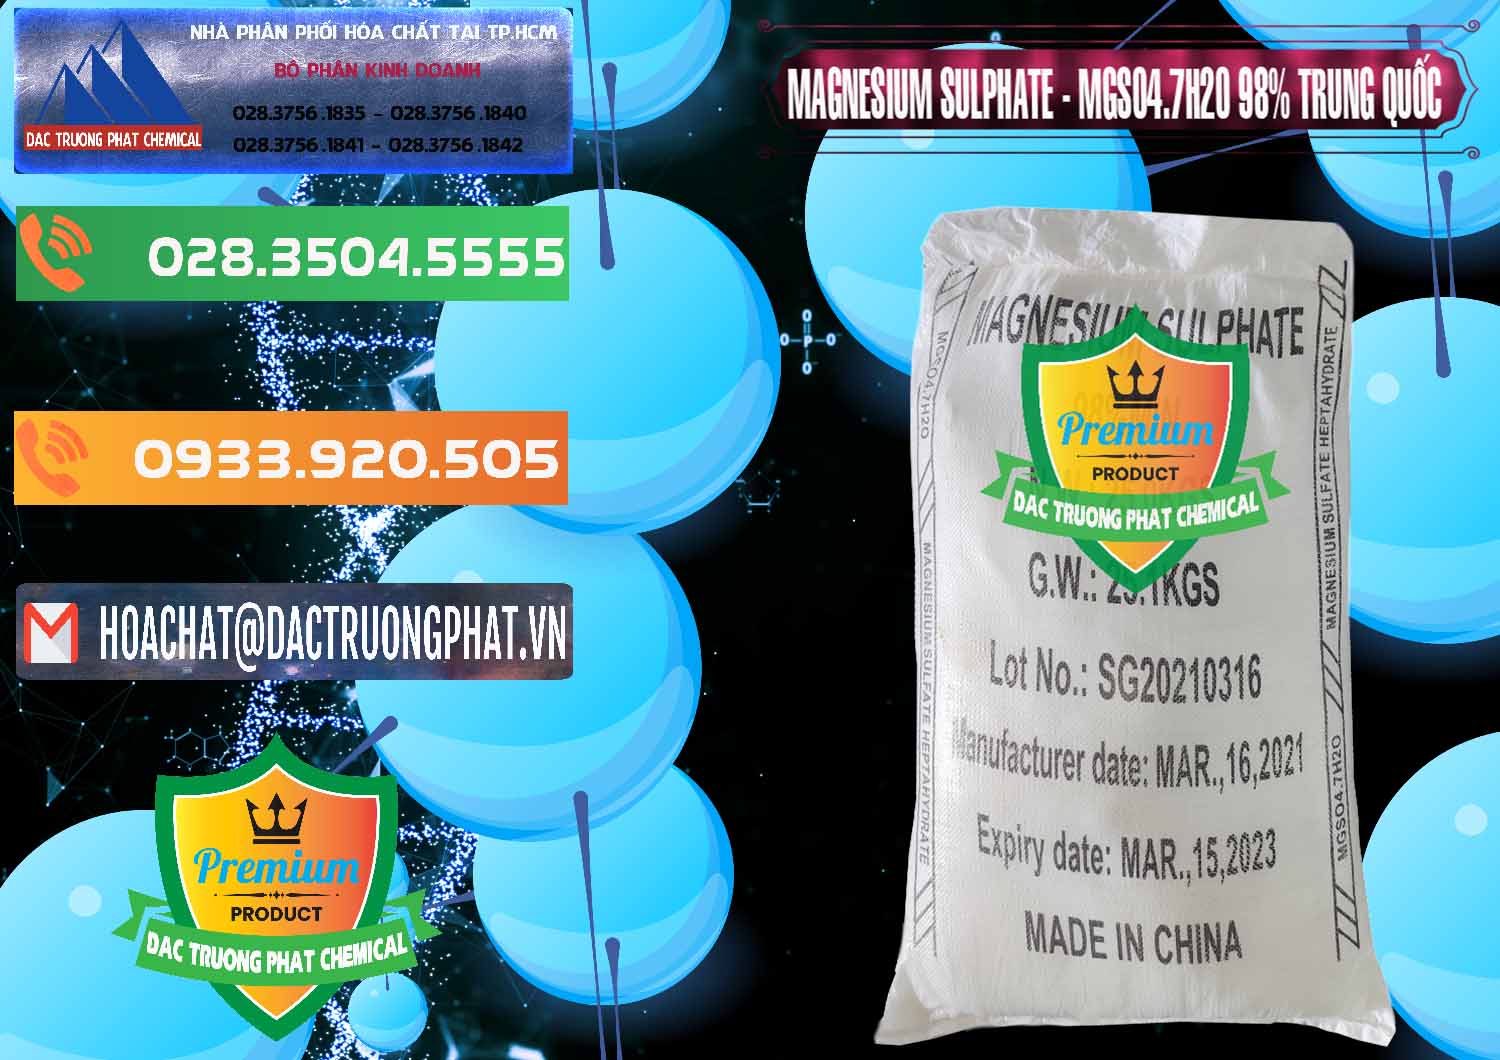 Bán & cung cấp MGSO4.7H2O – Magnesium Sulphate 98% Trung Quốc China - 0229 - Đơn vị chuyên phân phối ( bán ) hóa chất tại TP.HCM - hoachatxulynuoc.com.vn